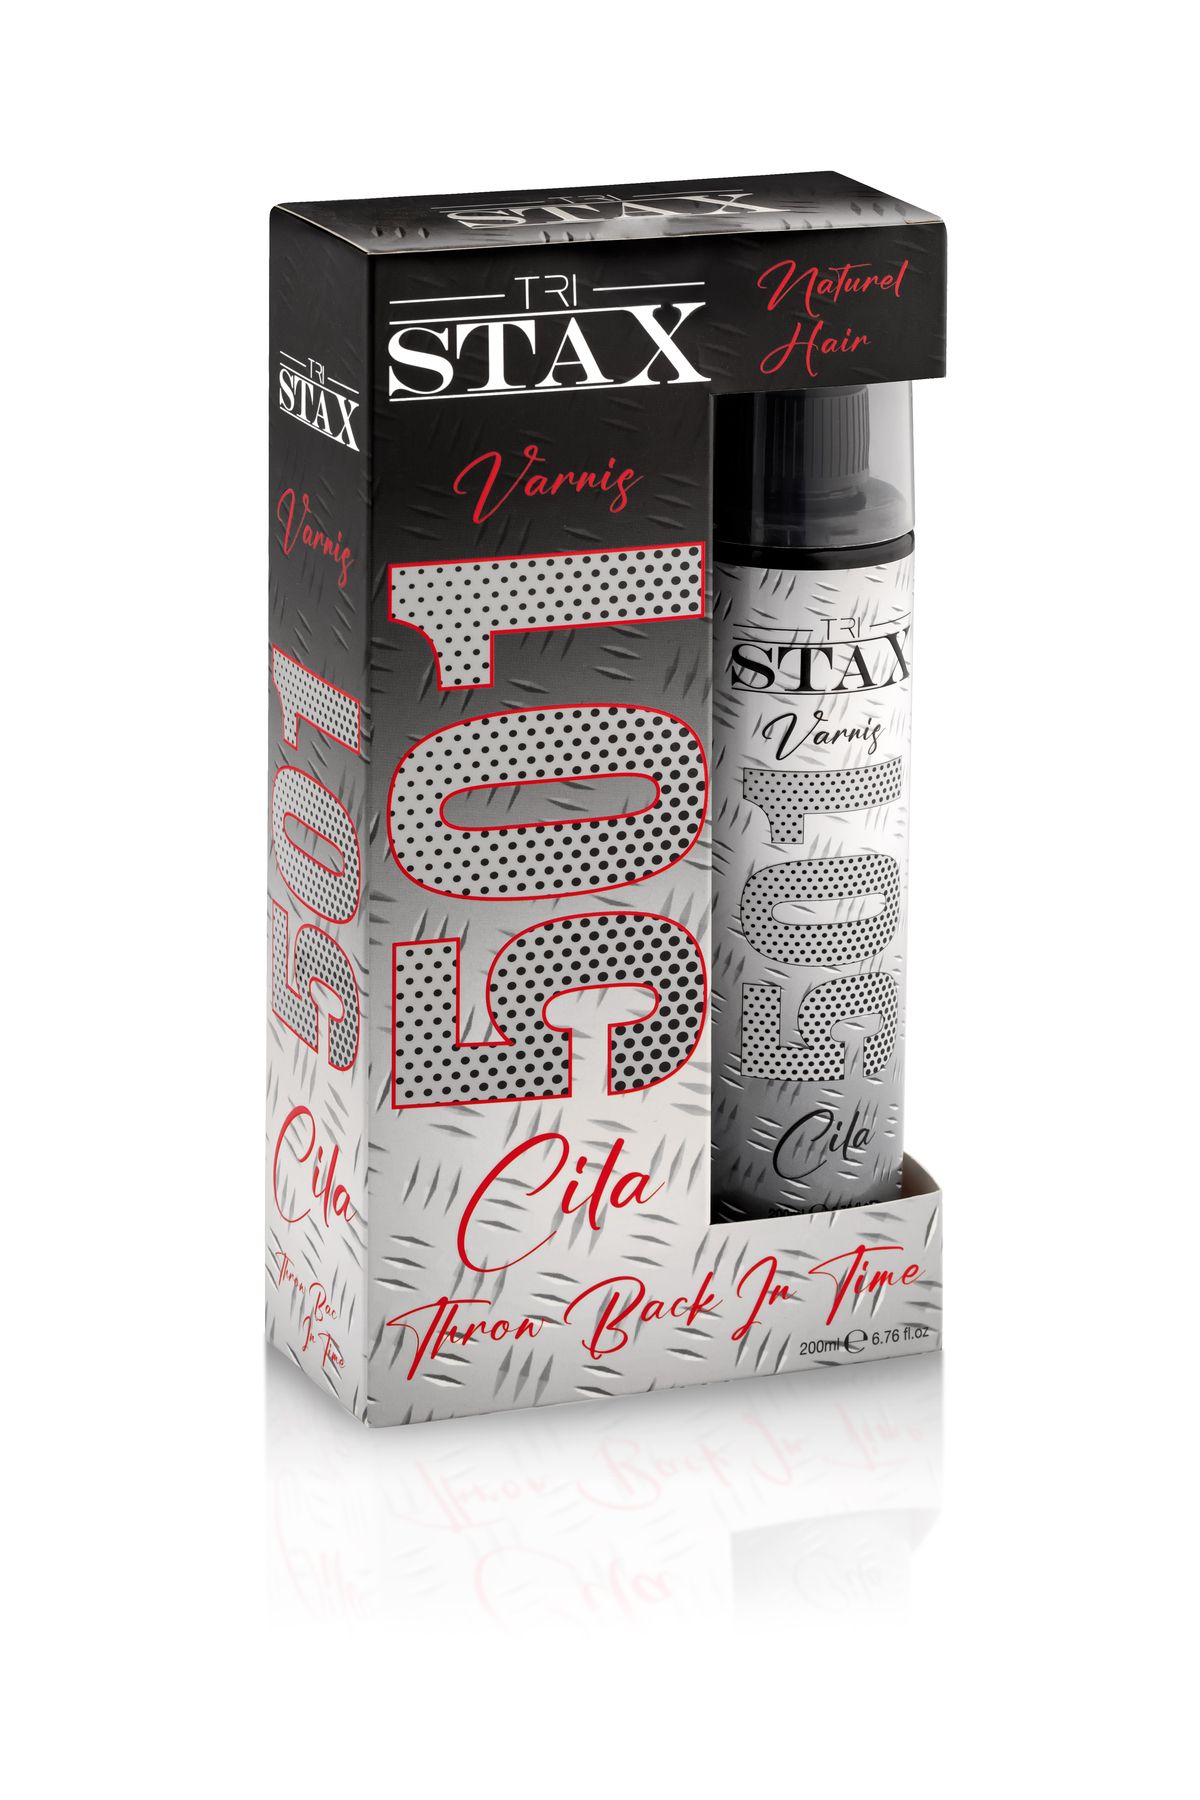 TRISTAX STAX 501 CİLA